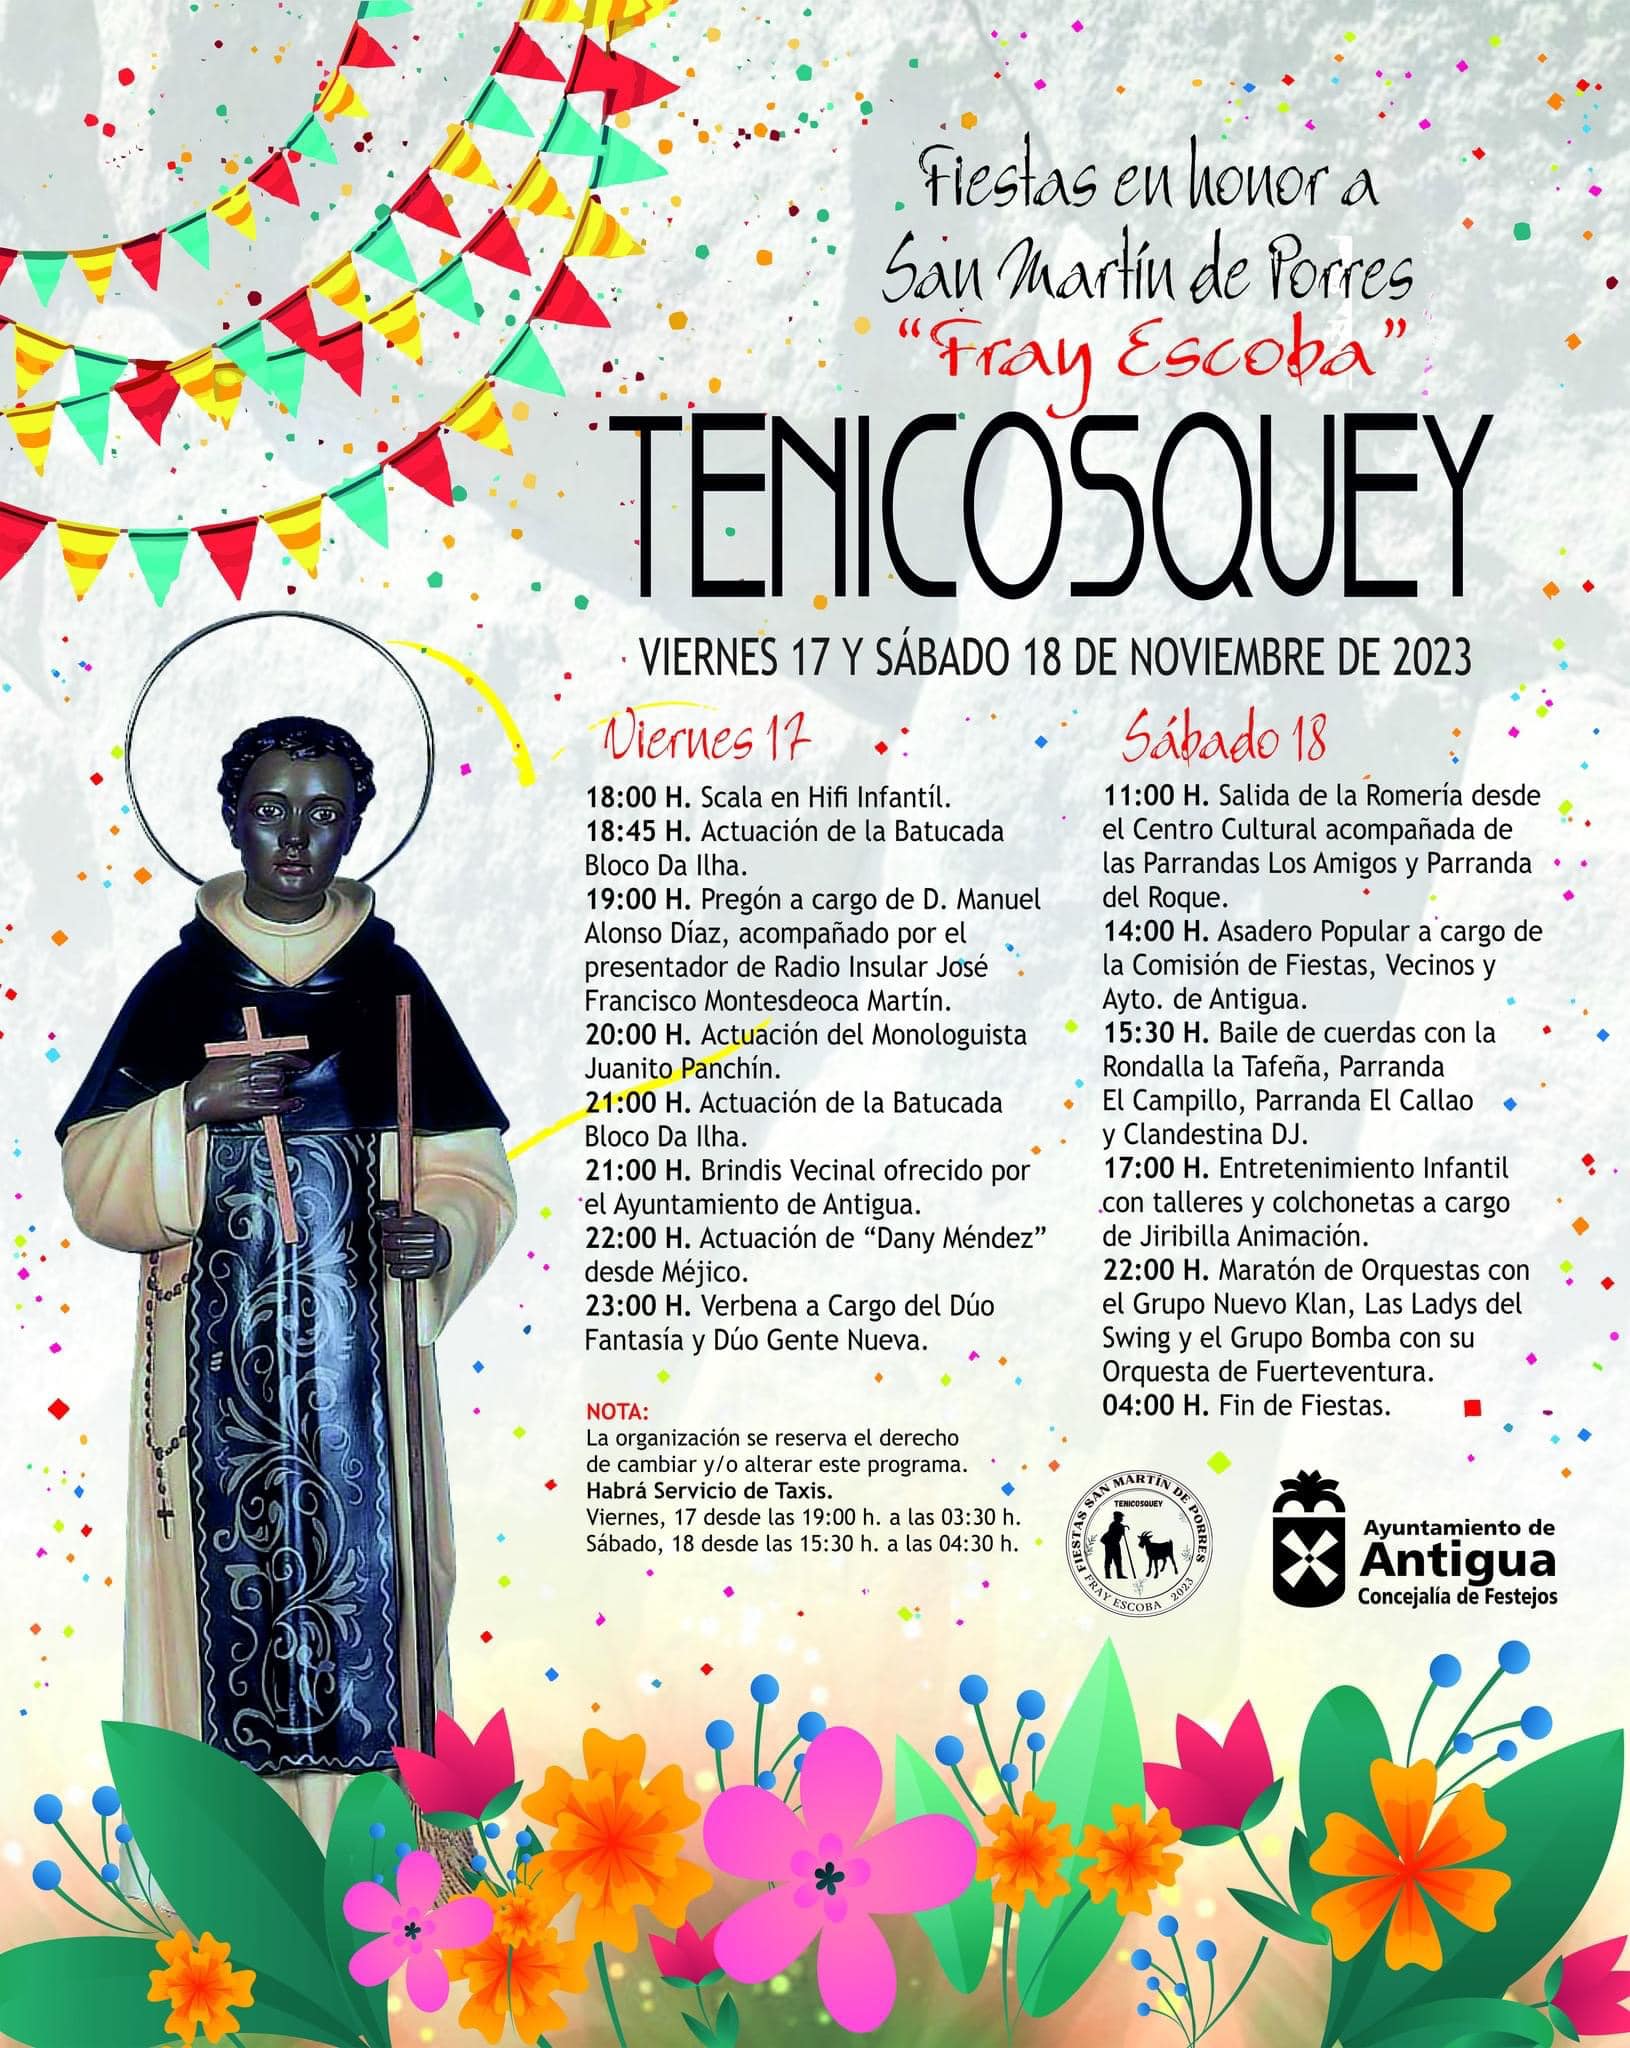 Programación de Actos, Eventos y Fechas de las Fiestas de San Martín de Porres en Tenicosquey en Antigua 2023 